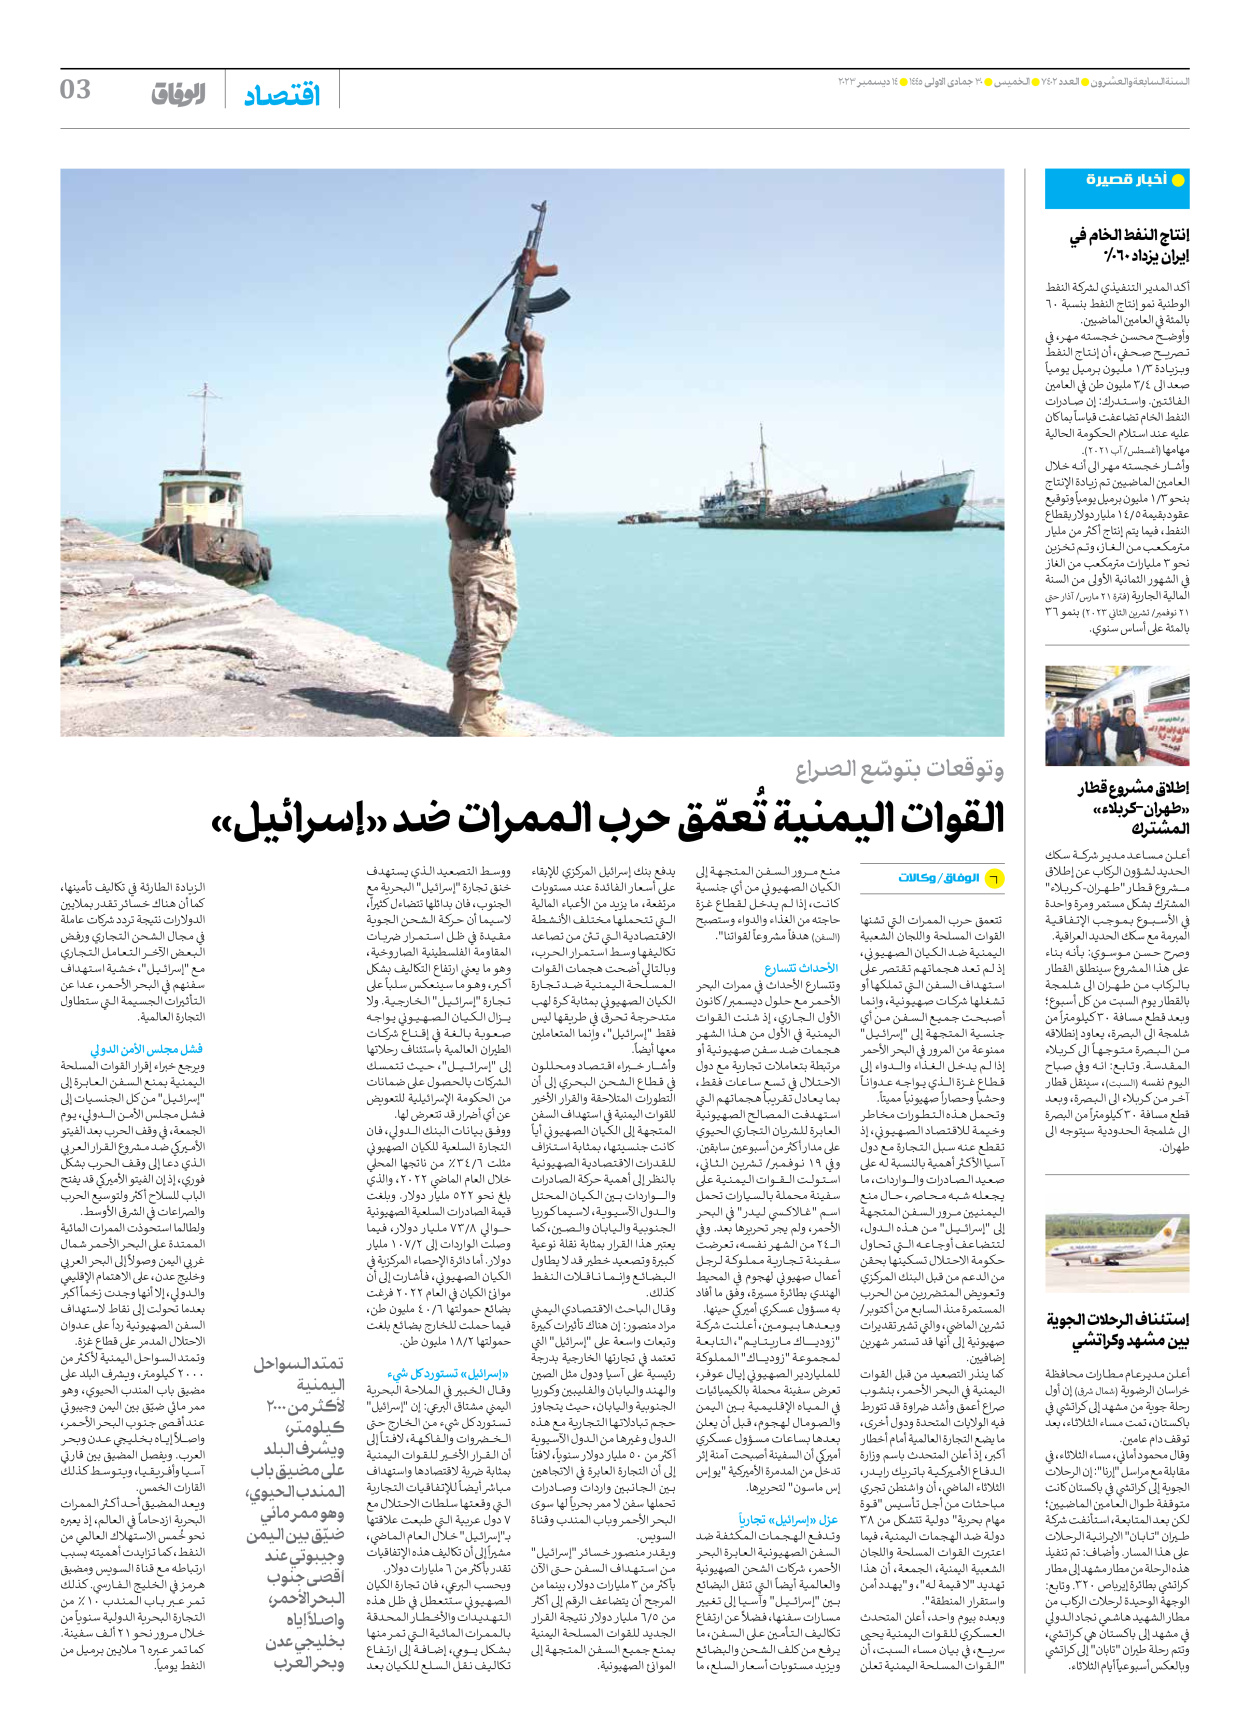 صحیفة ایران الدولیة الوفاق - العدد سبعة آلاف وأربعمائة واثنان - ١٤ ديسمبر ٢٠٢٣ - الصفحة ۳